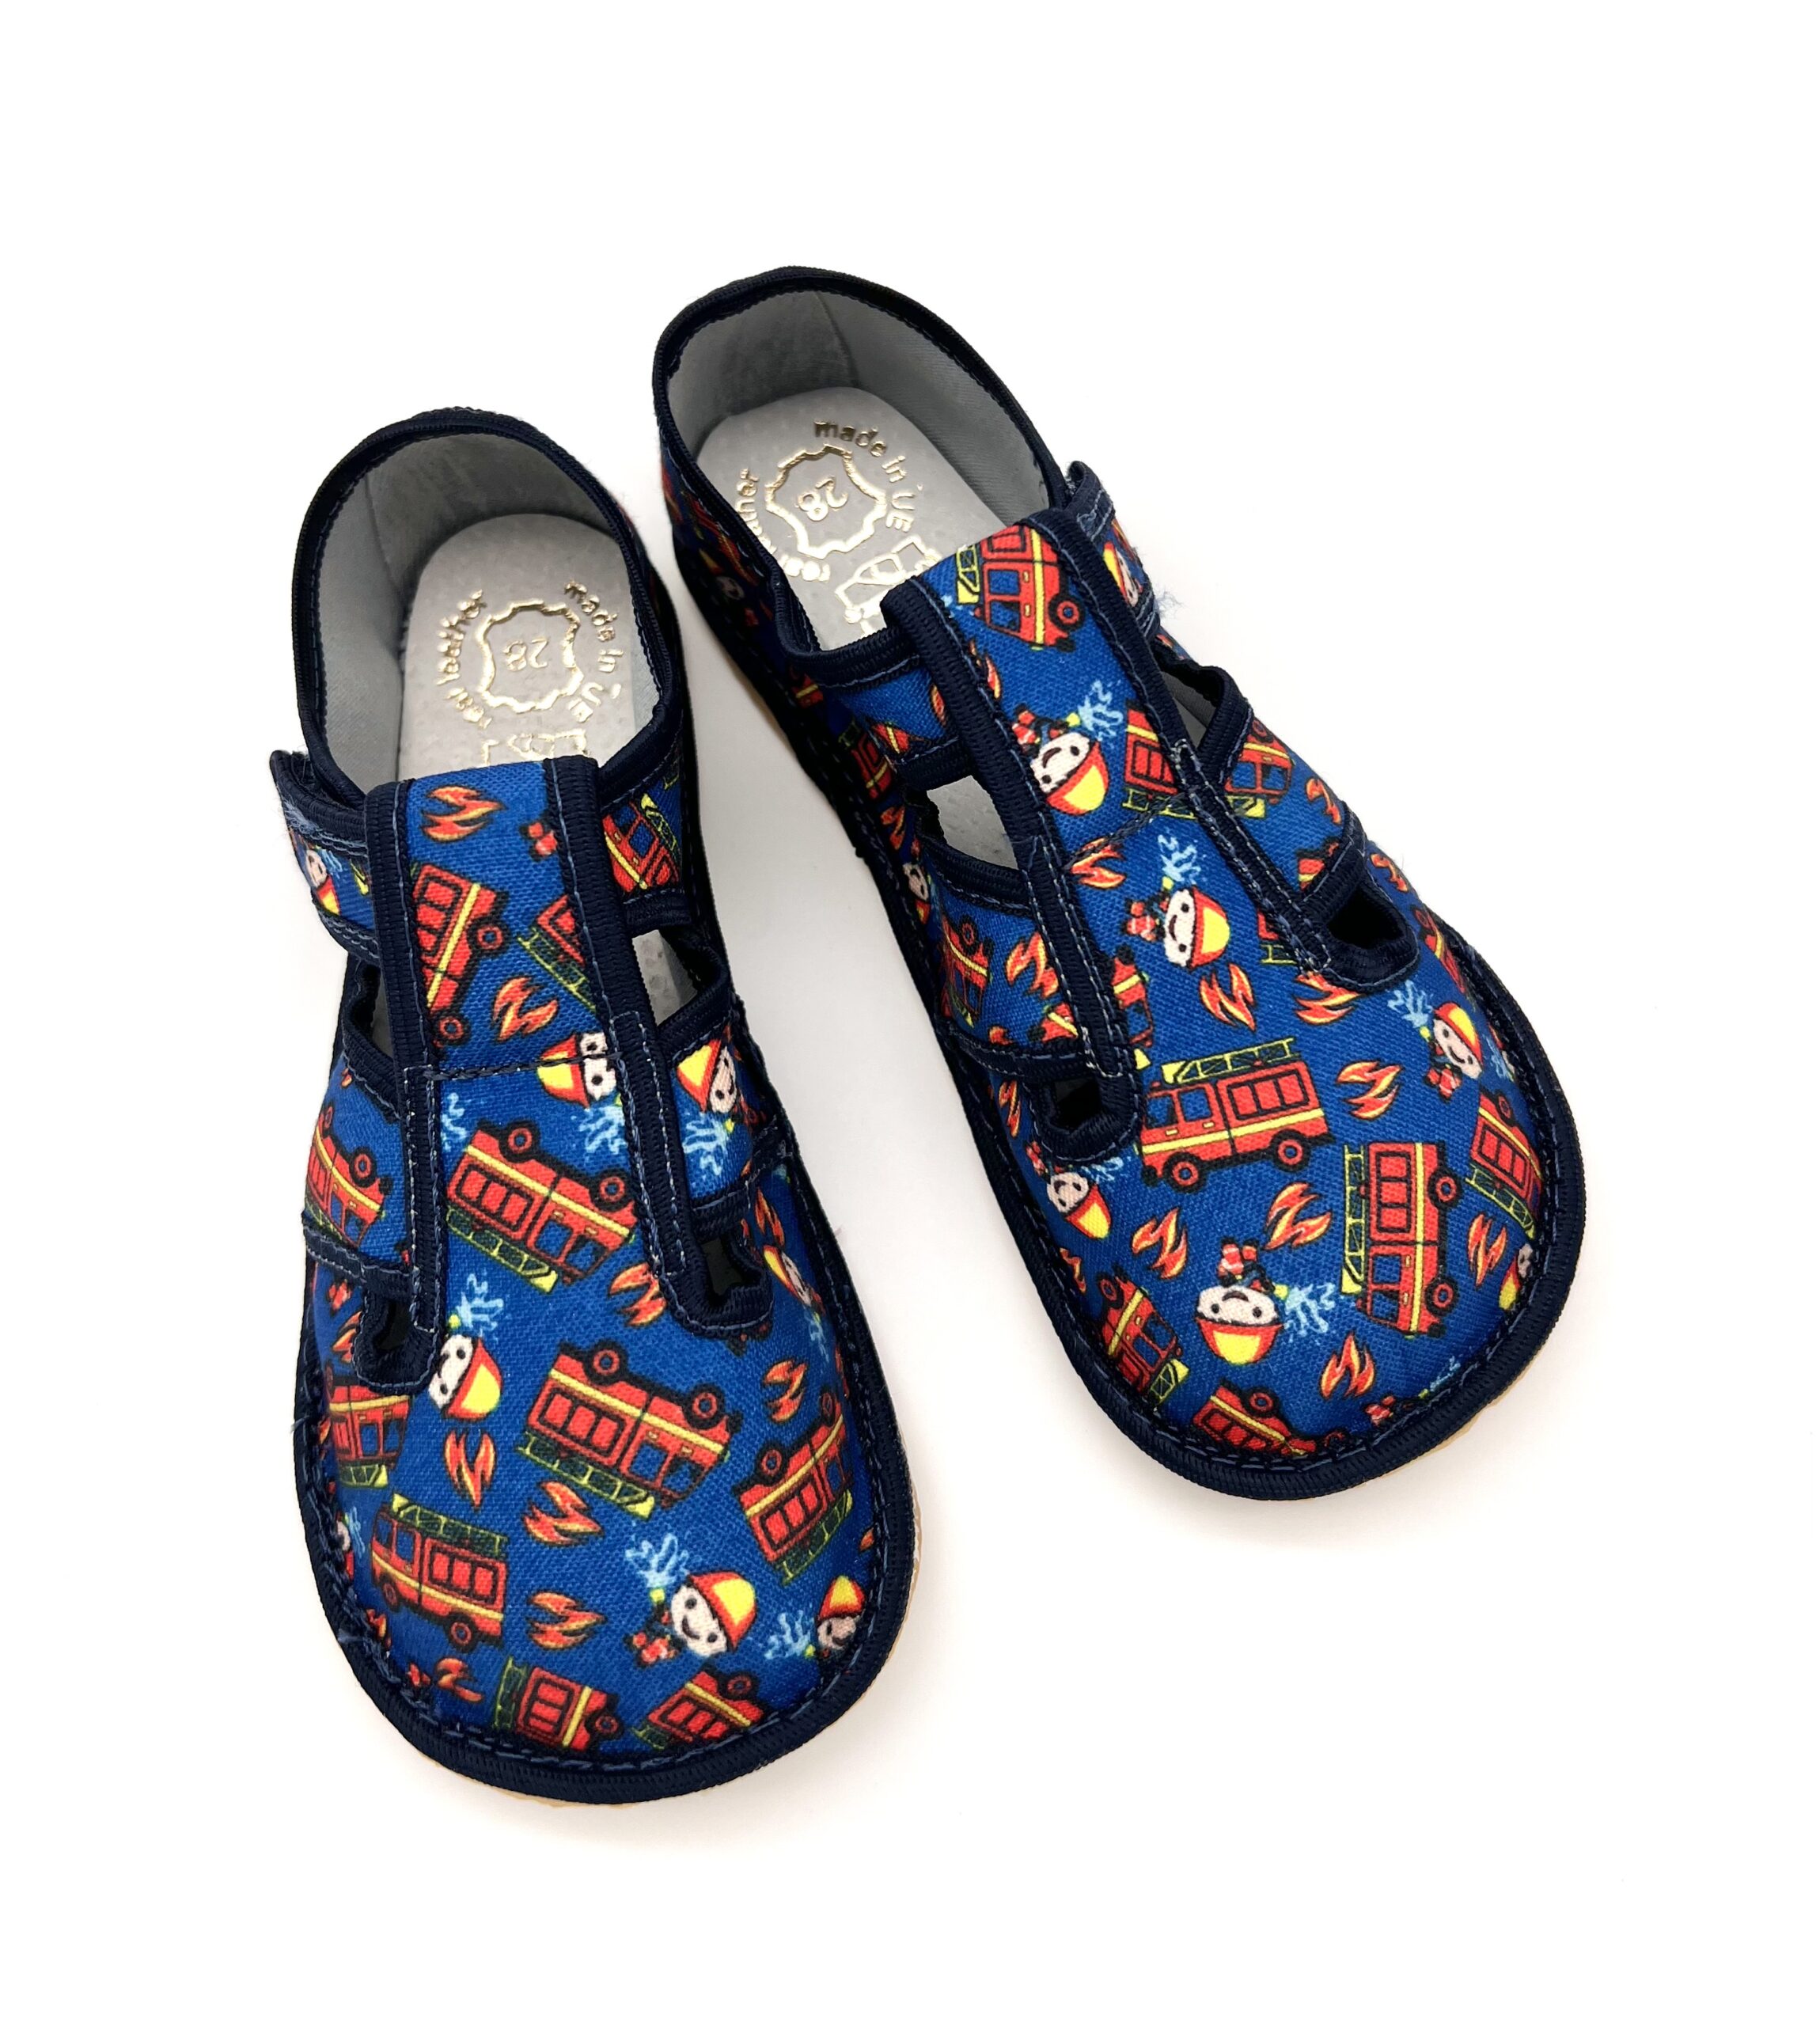 Reweks sisejalatsid Zuzia, Tuletõrje Laste barefoot jalatsid - HellyK - Kvaliteetsed lasteriided, villariided, barefoot jalatsid